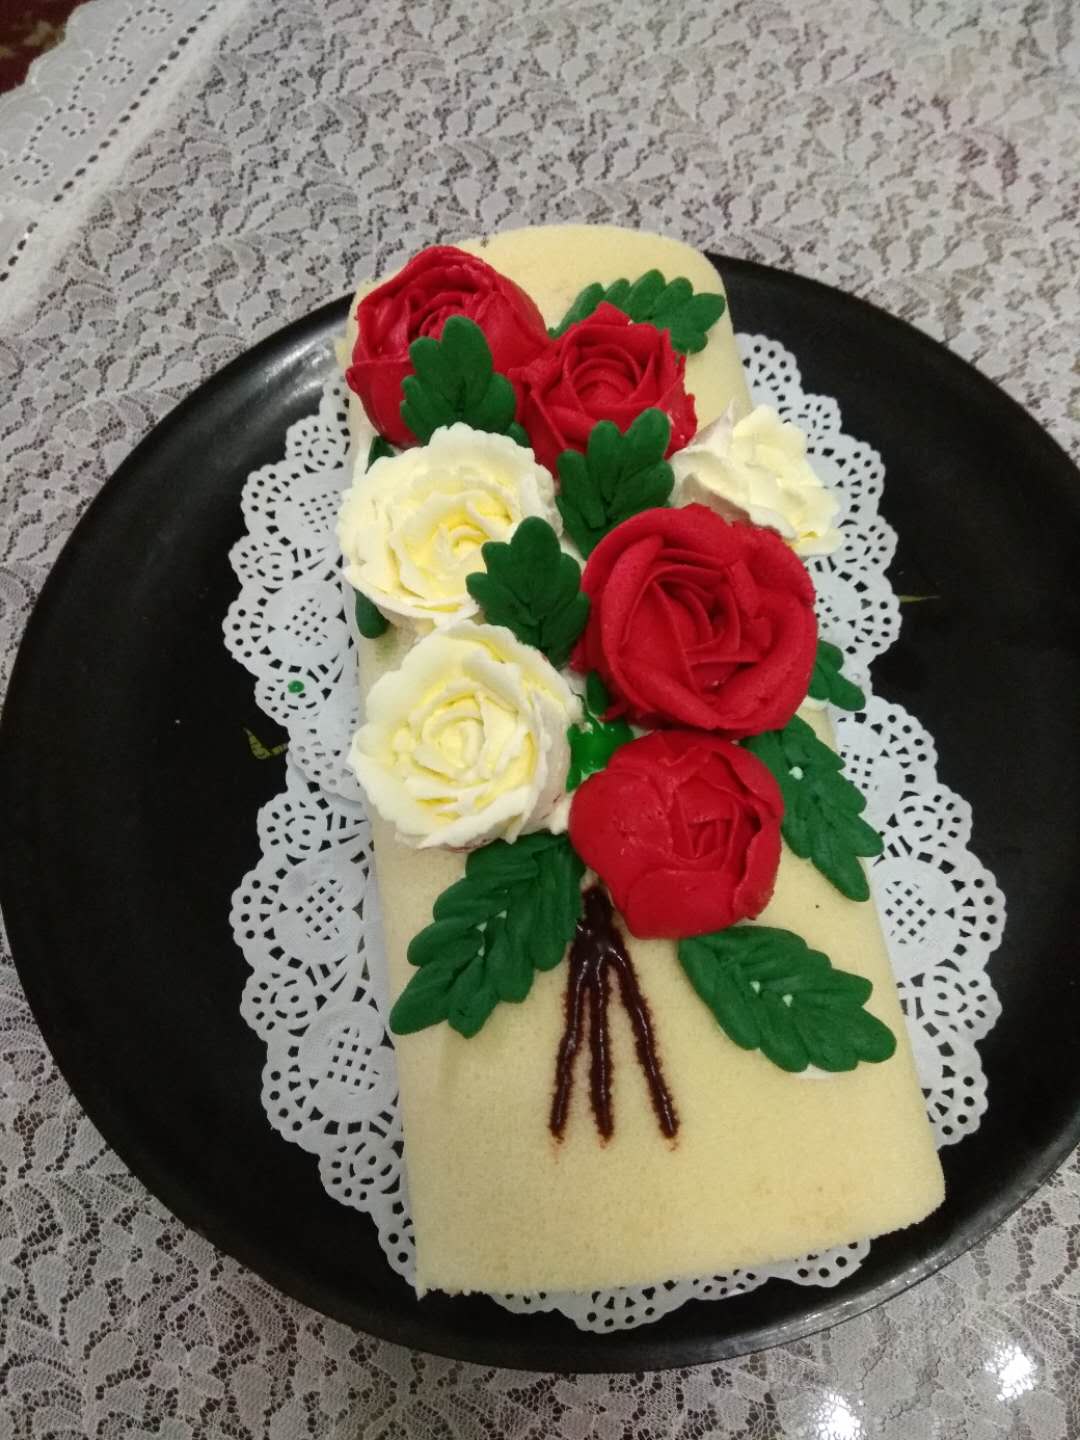 裱花蛋糕卷